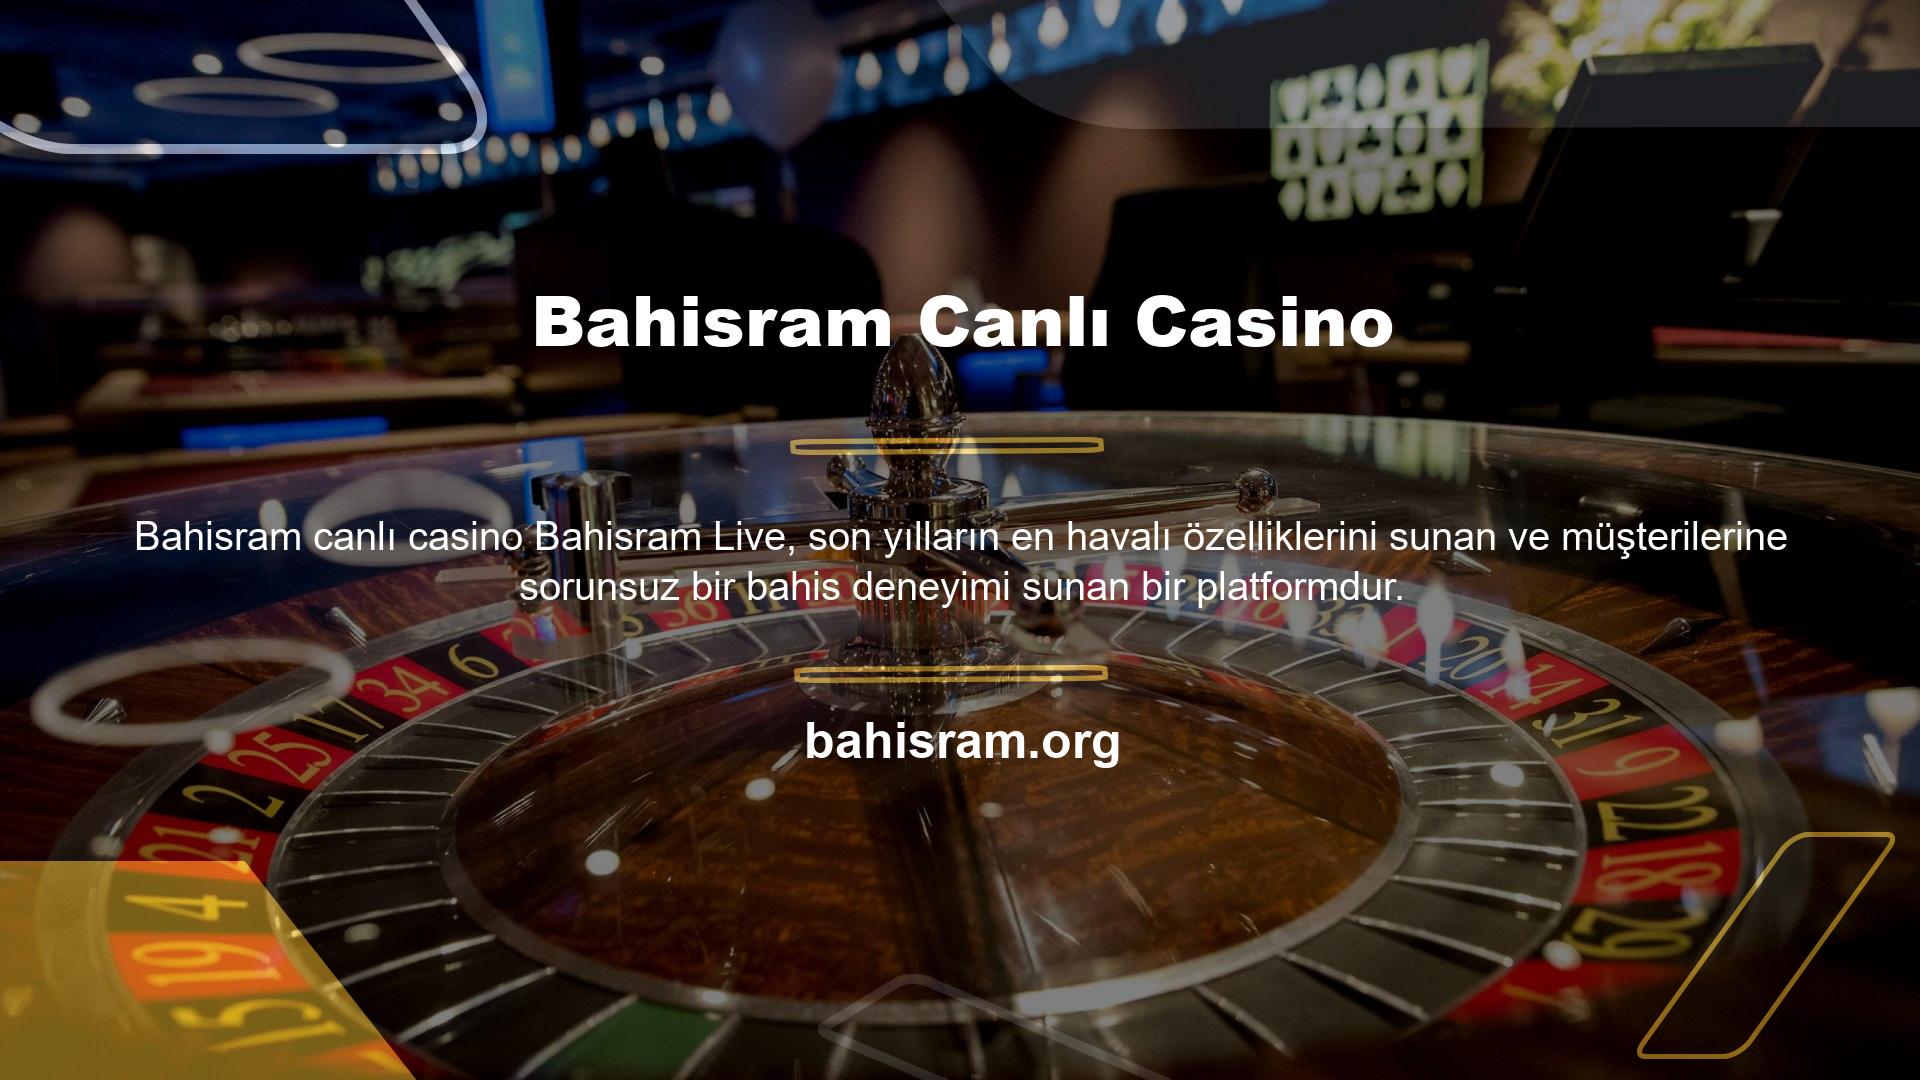 Bahisram, resmi web sitesinde canlı spor, canlı casino ve diğer oyunları sunmaktadır